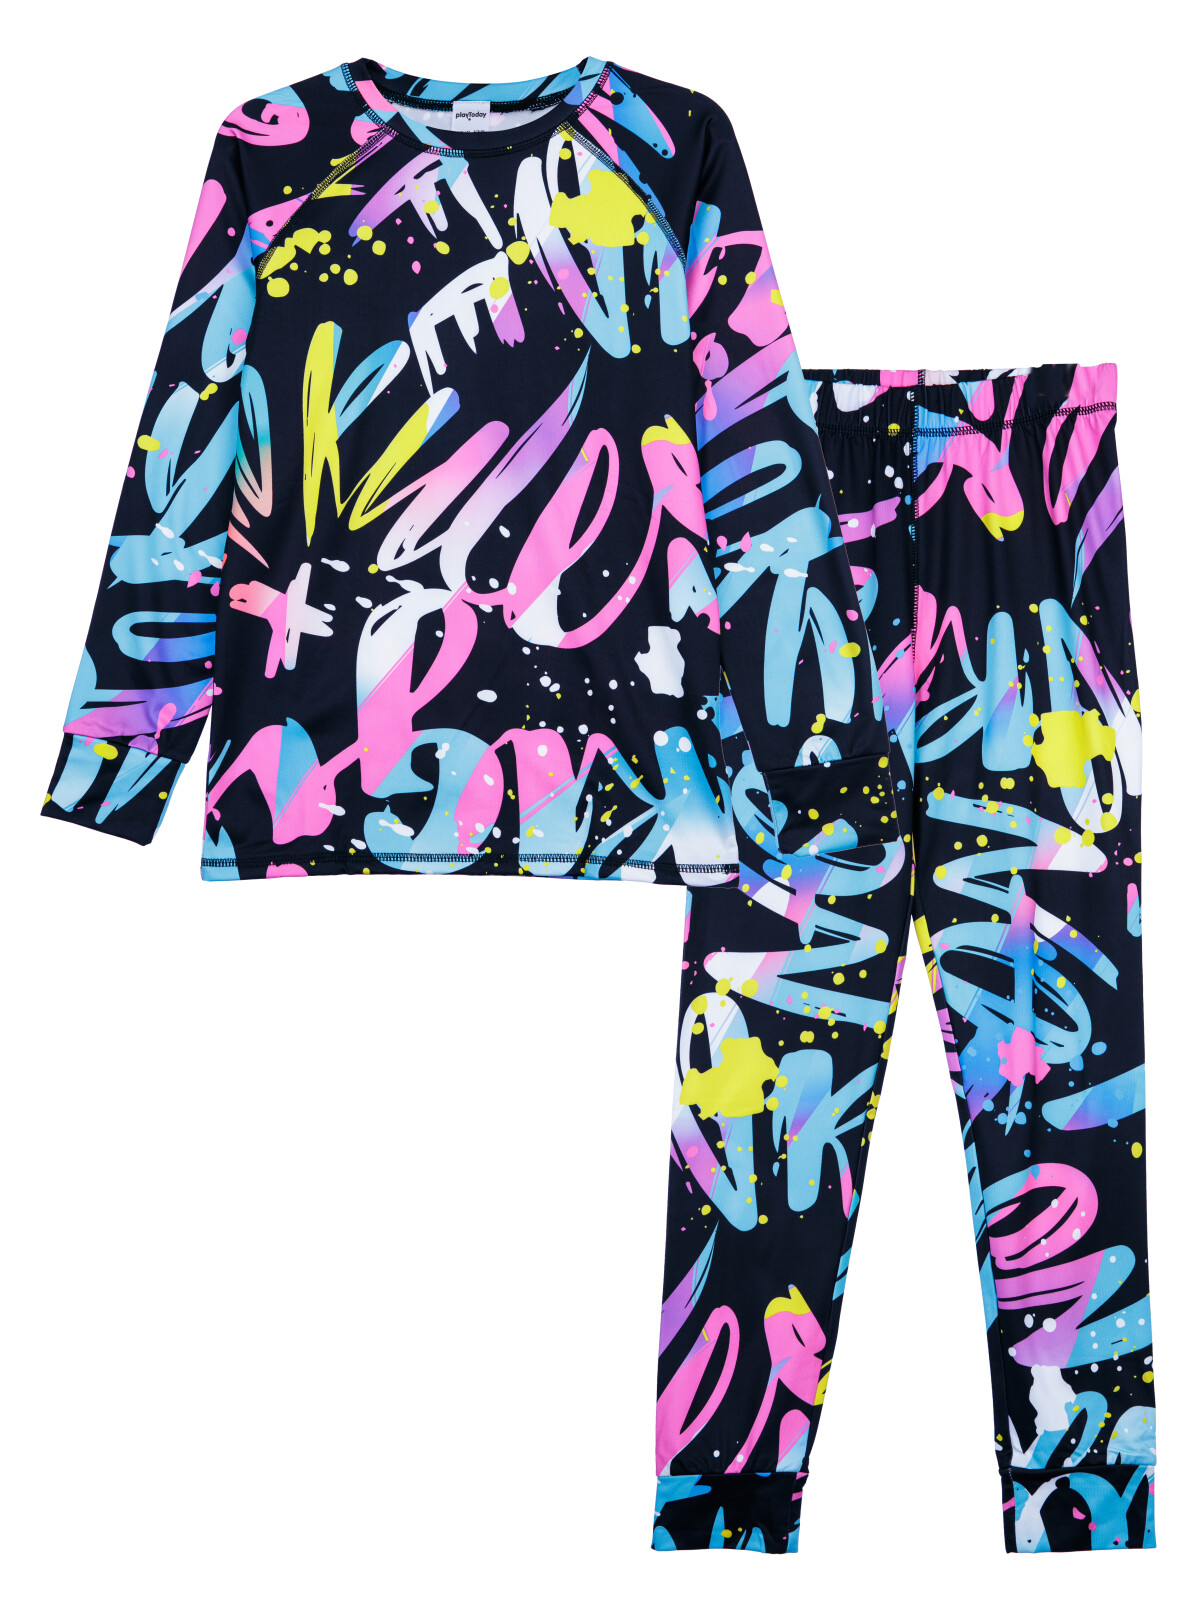 Термокомплект для девочек PlayToday: брюки, толстовка, цветной, 146